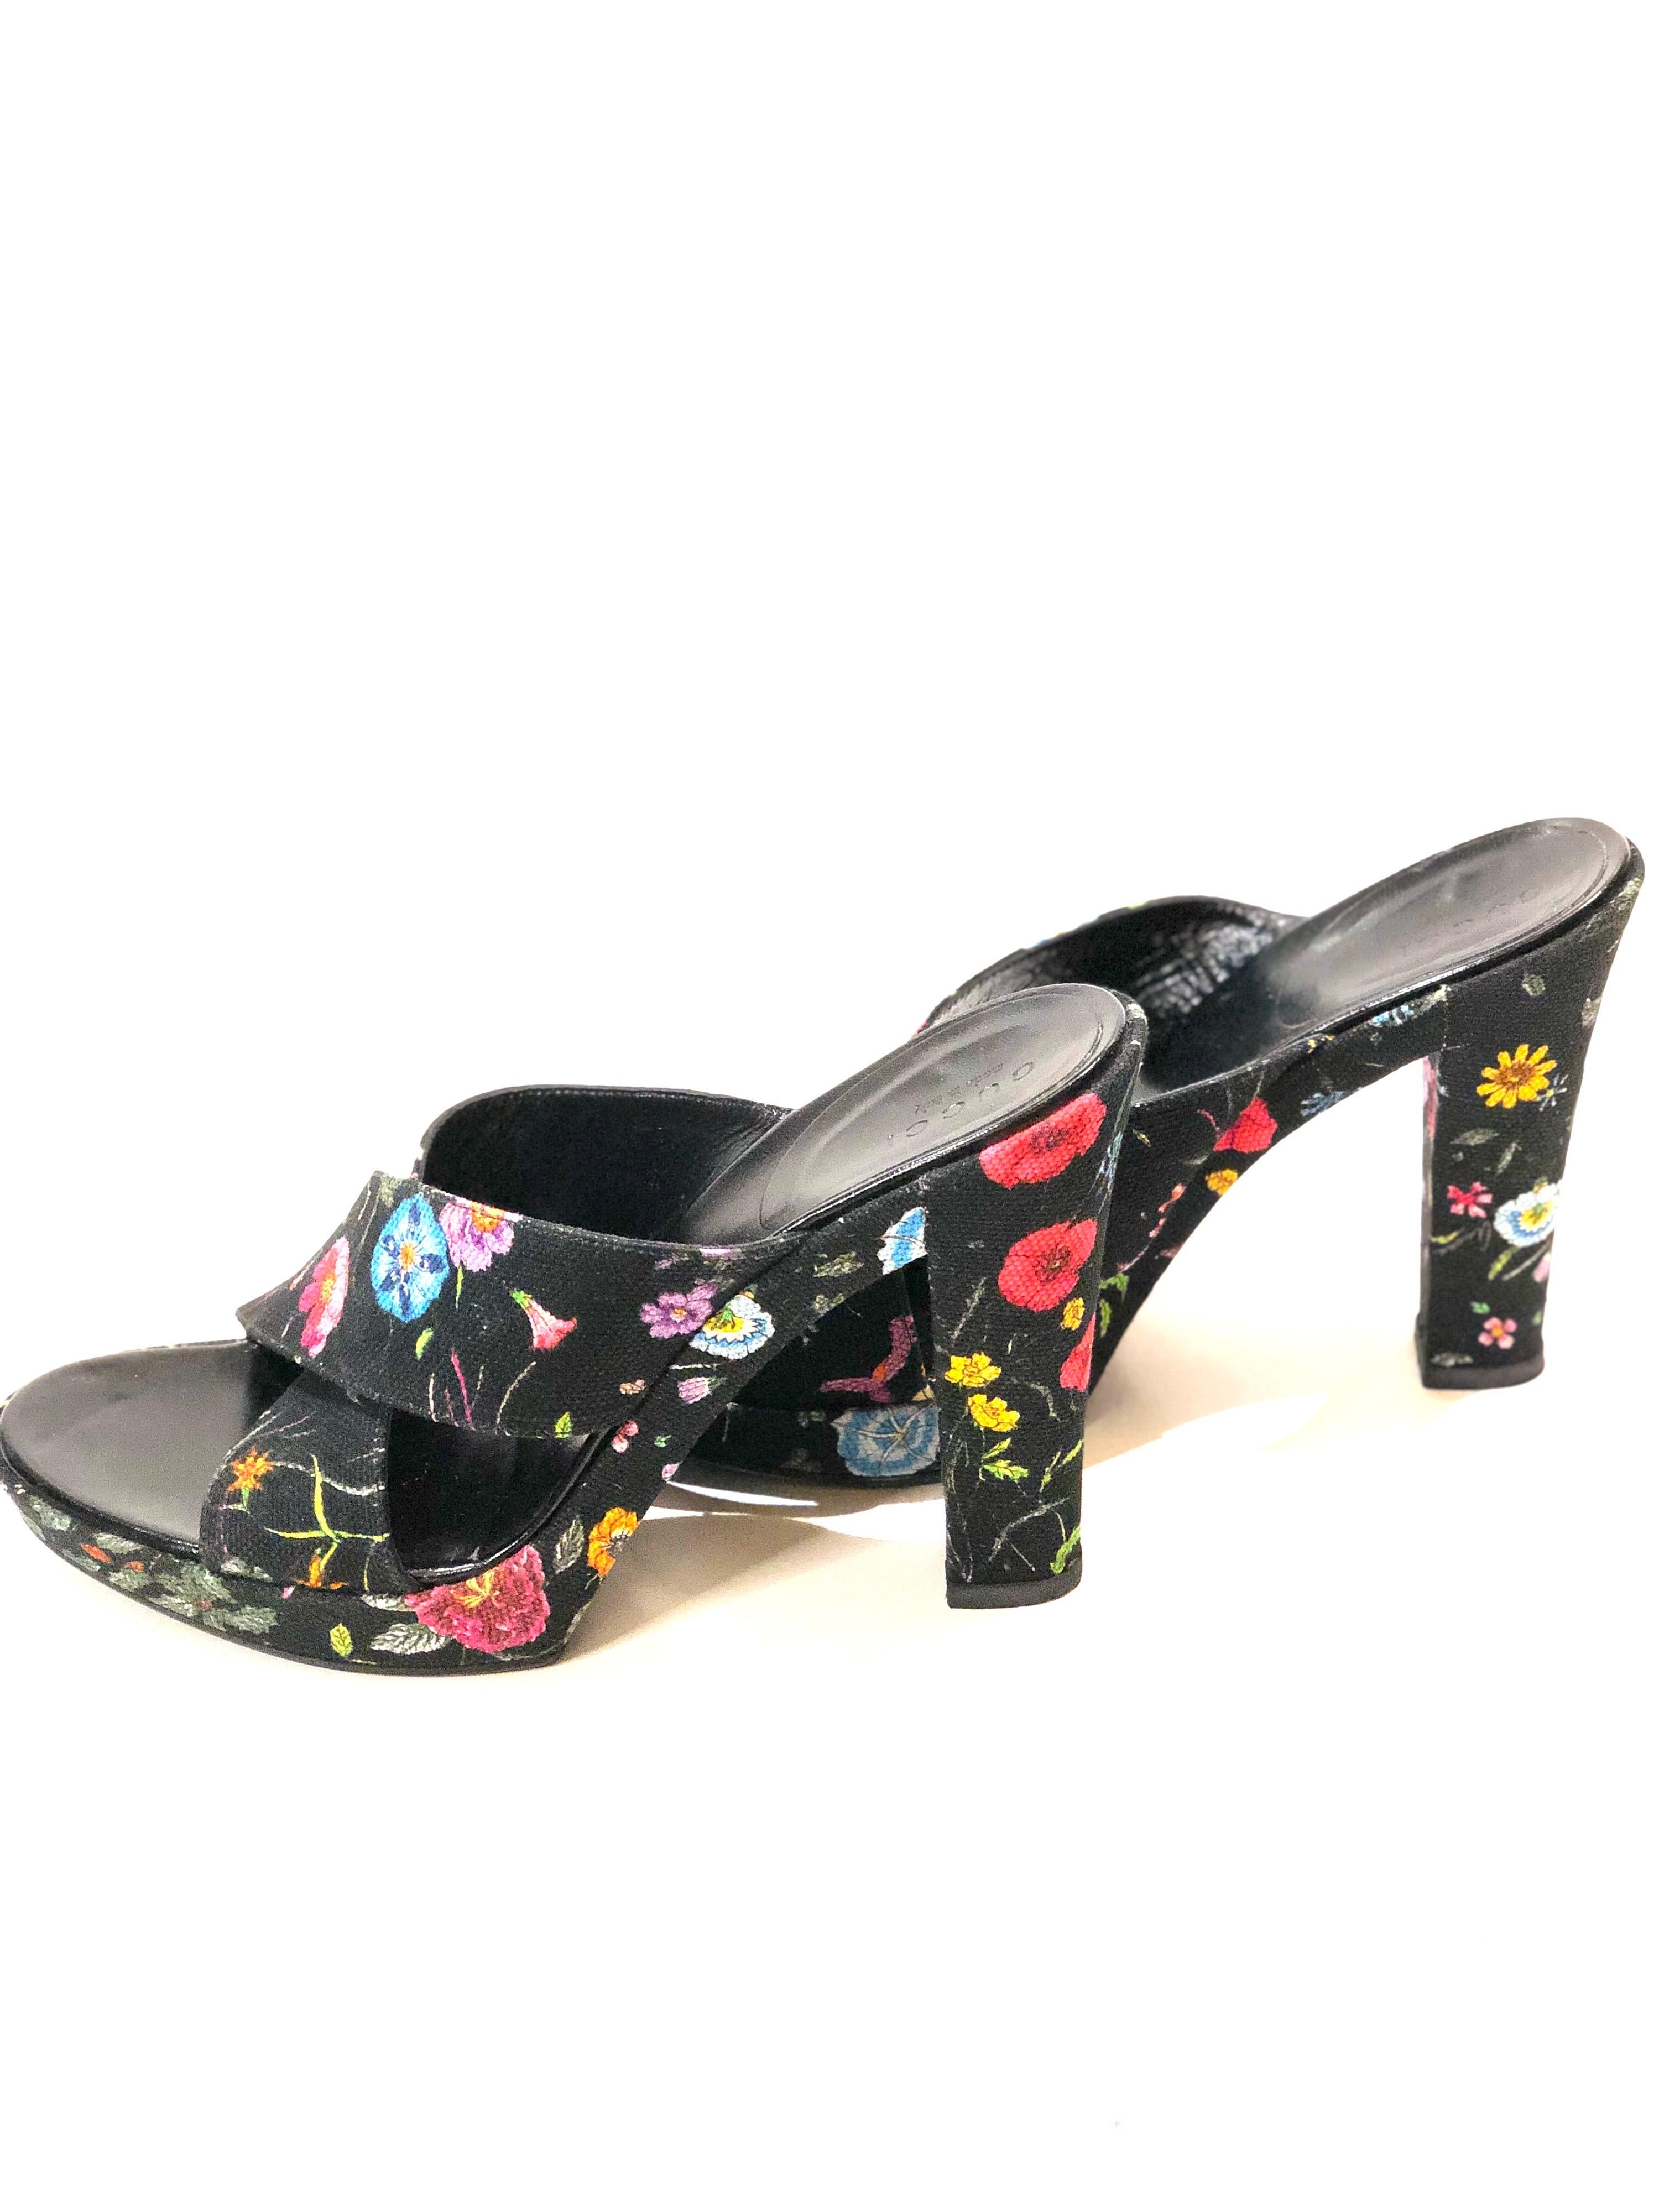 Black Gucci Floral Canvas Sandals Mules For Sale